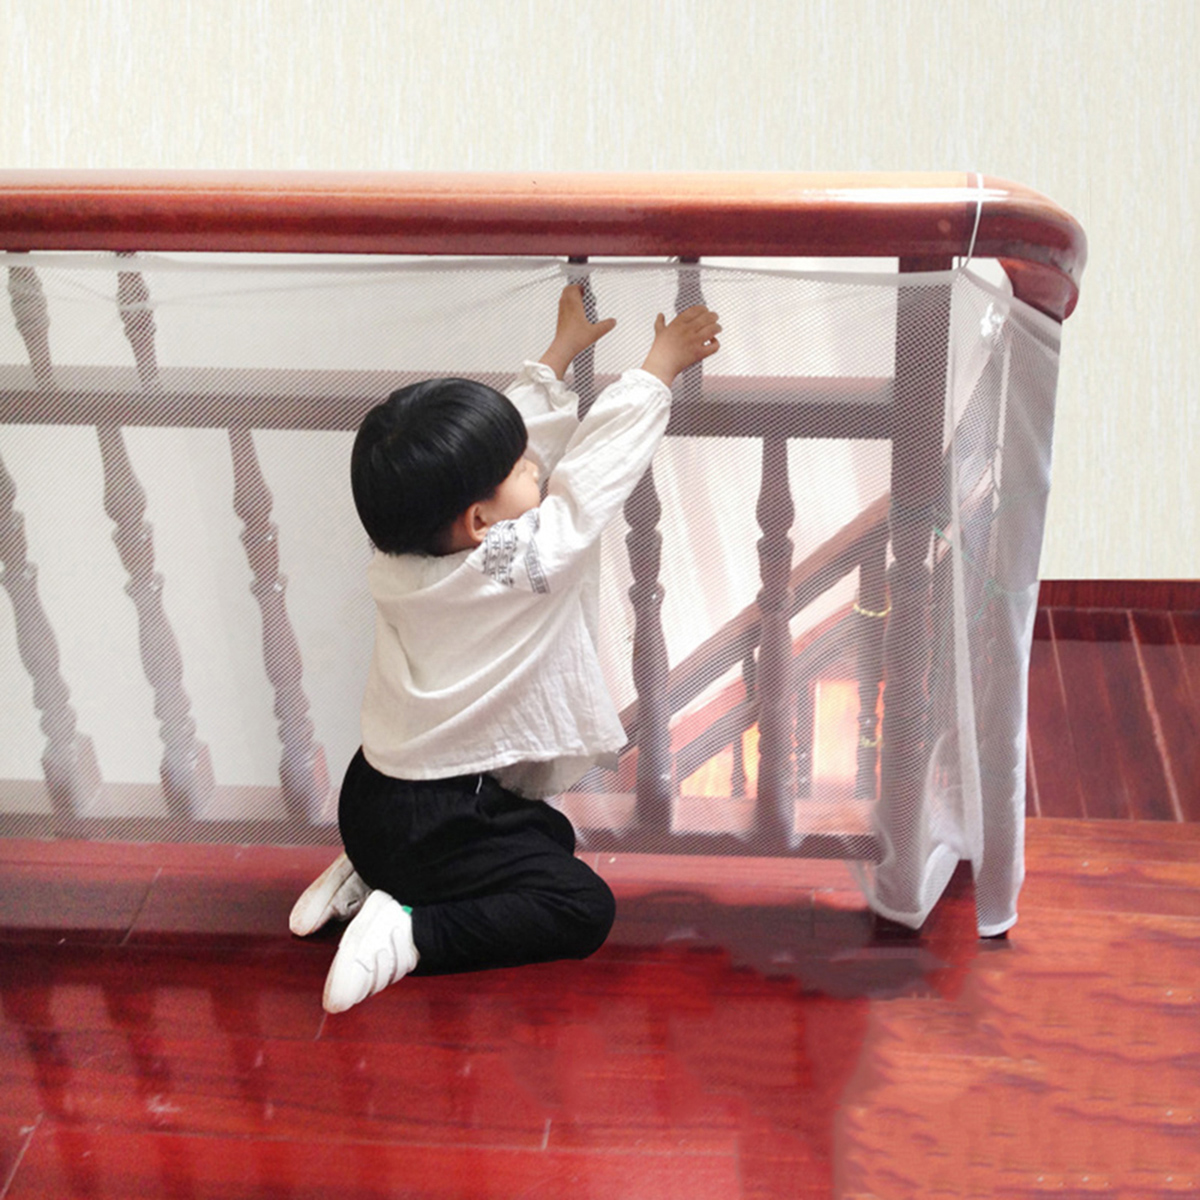 3m fortykkede børnetrapper sikkerhedsnet tykt hårdt mesh netbeskyttelse skinne altan trappehegn babyhegn trappe beskyttelsesnet